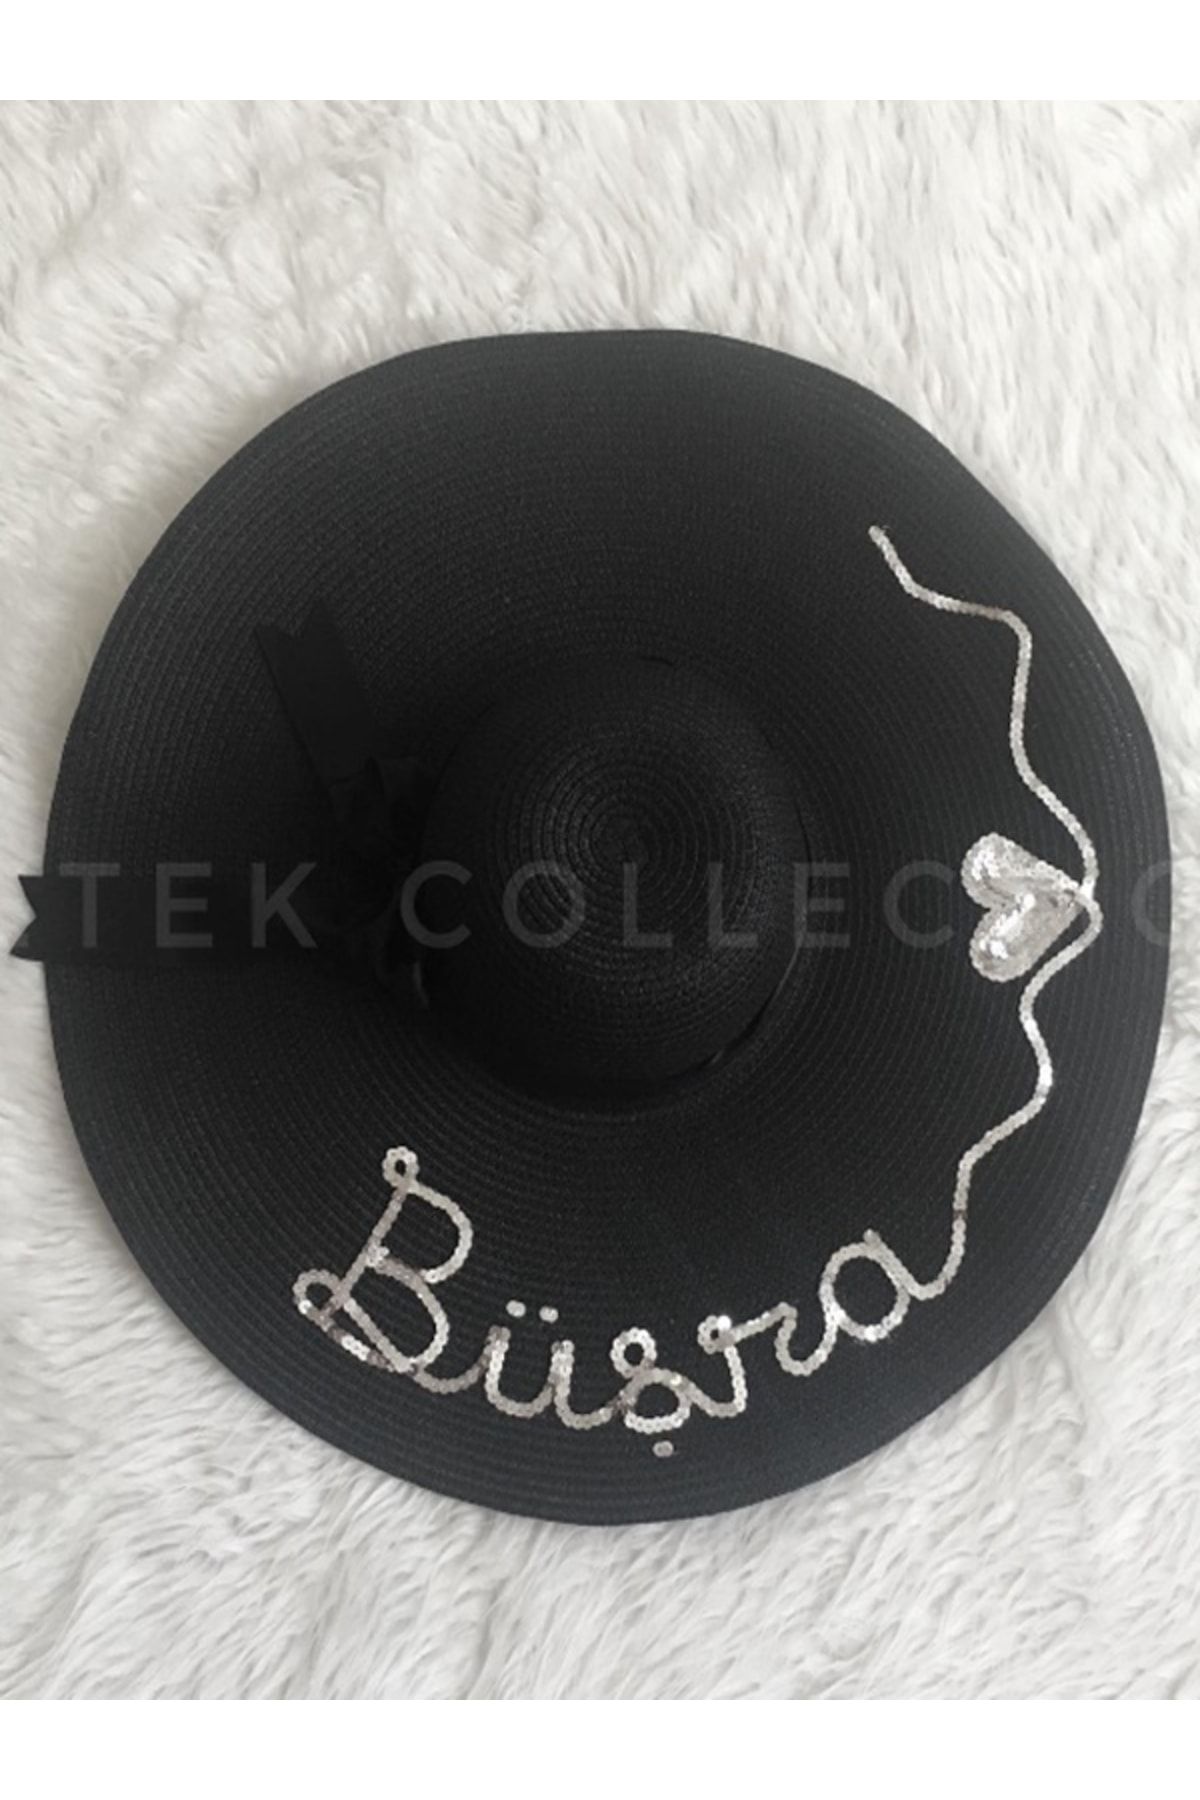 Petek Collection Kişiye Özel Tasarım Isimli Kalpli Siyah Hasır Şapka